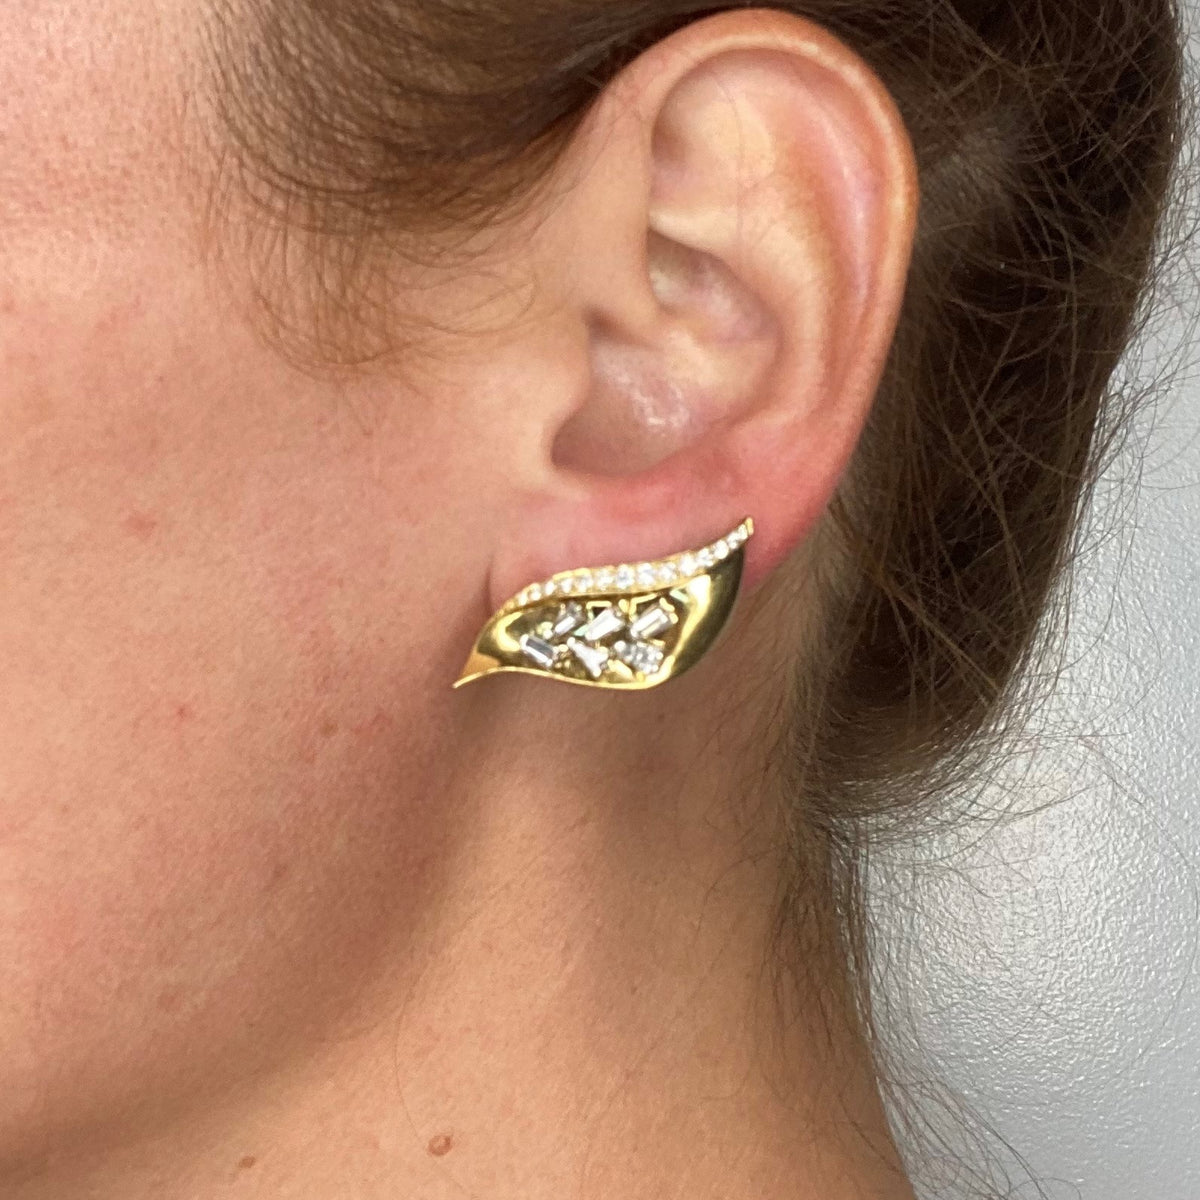 Clip on Earrings Converters, Pierced Earrings to Clip Earrings, Comfortable  Convertible Earrings Converters, Gold, Silver, No Piercing -  Denmark